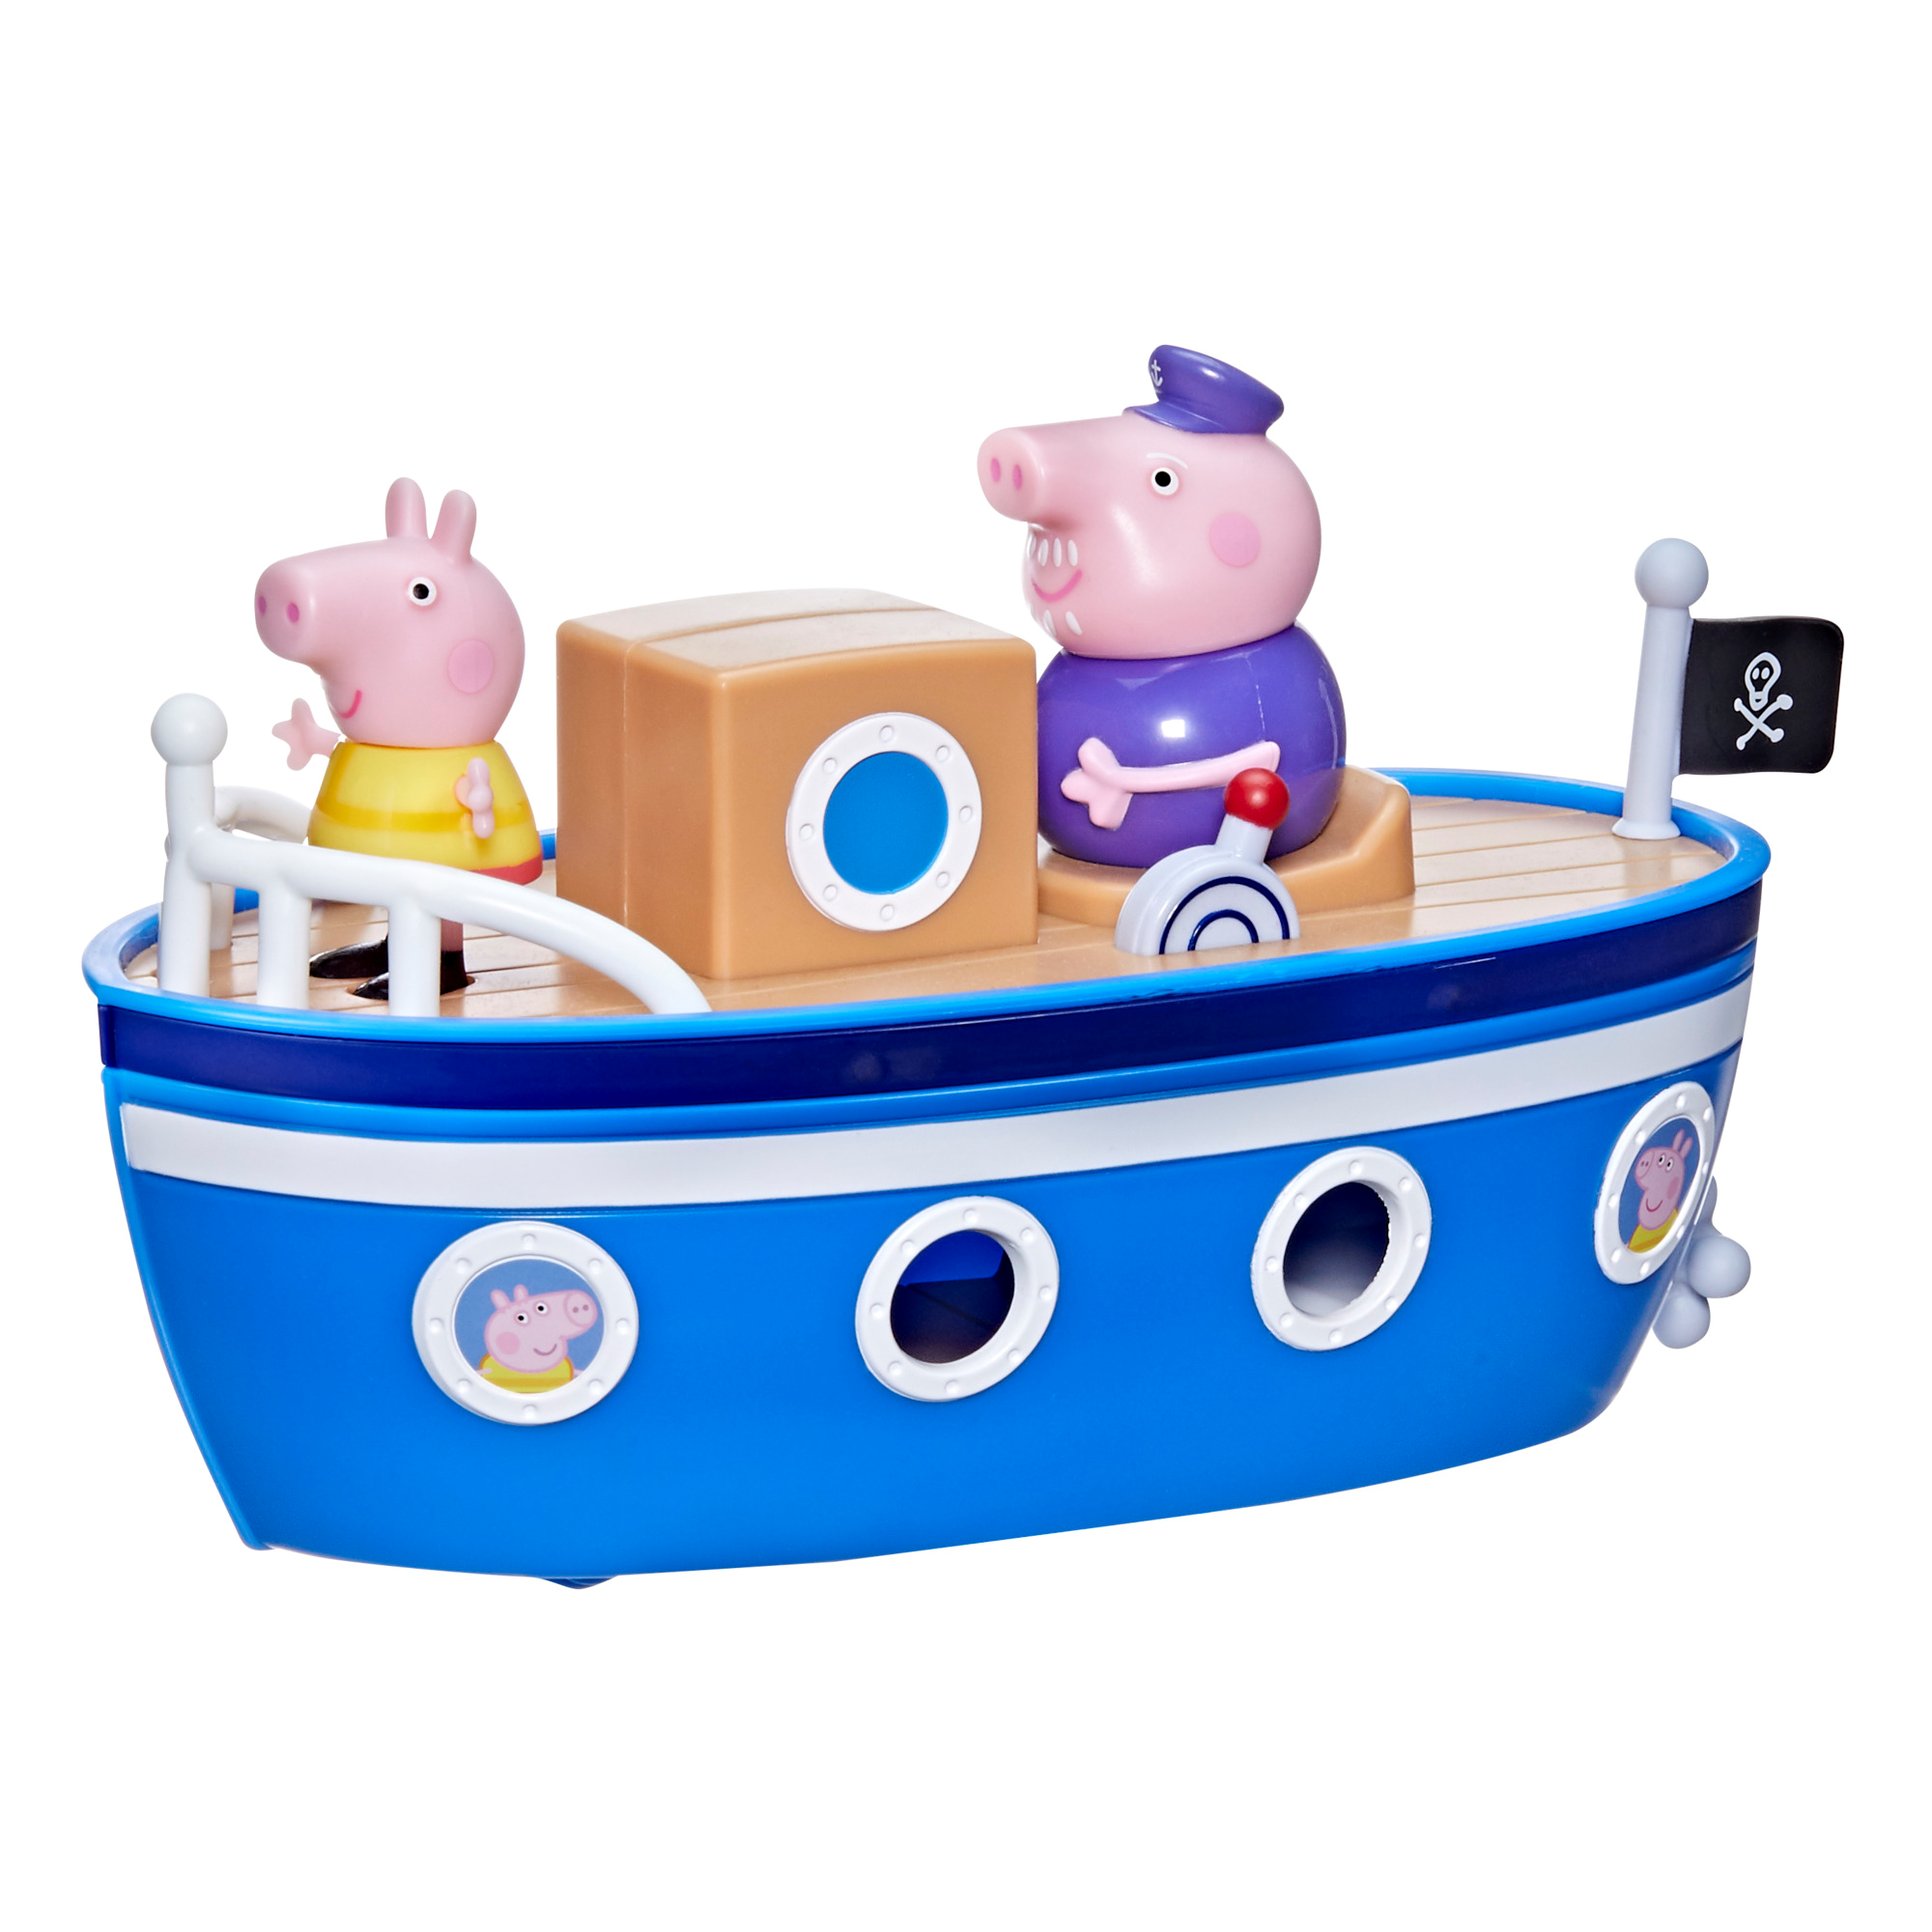 Peppa pig - la barca di nonno pig, barca giocattolo per età prescolare con 1 personaggio, dai 3 anni in su - PEPPA PIG